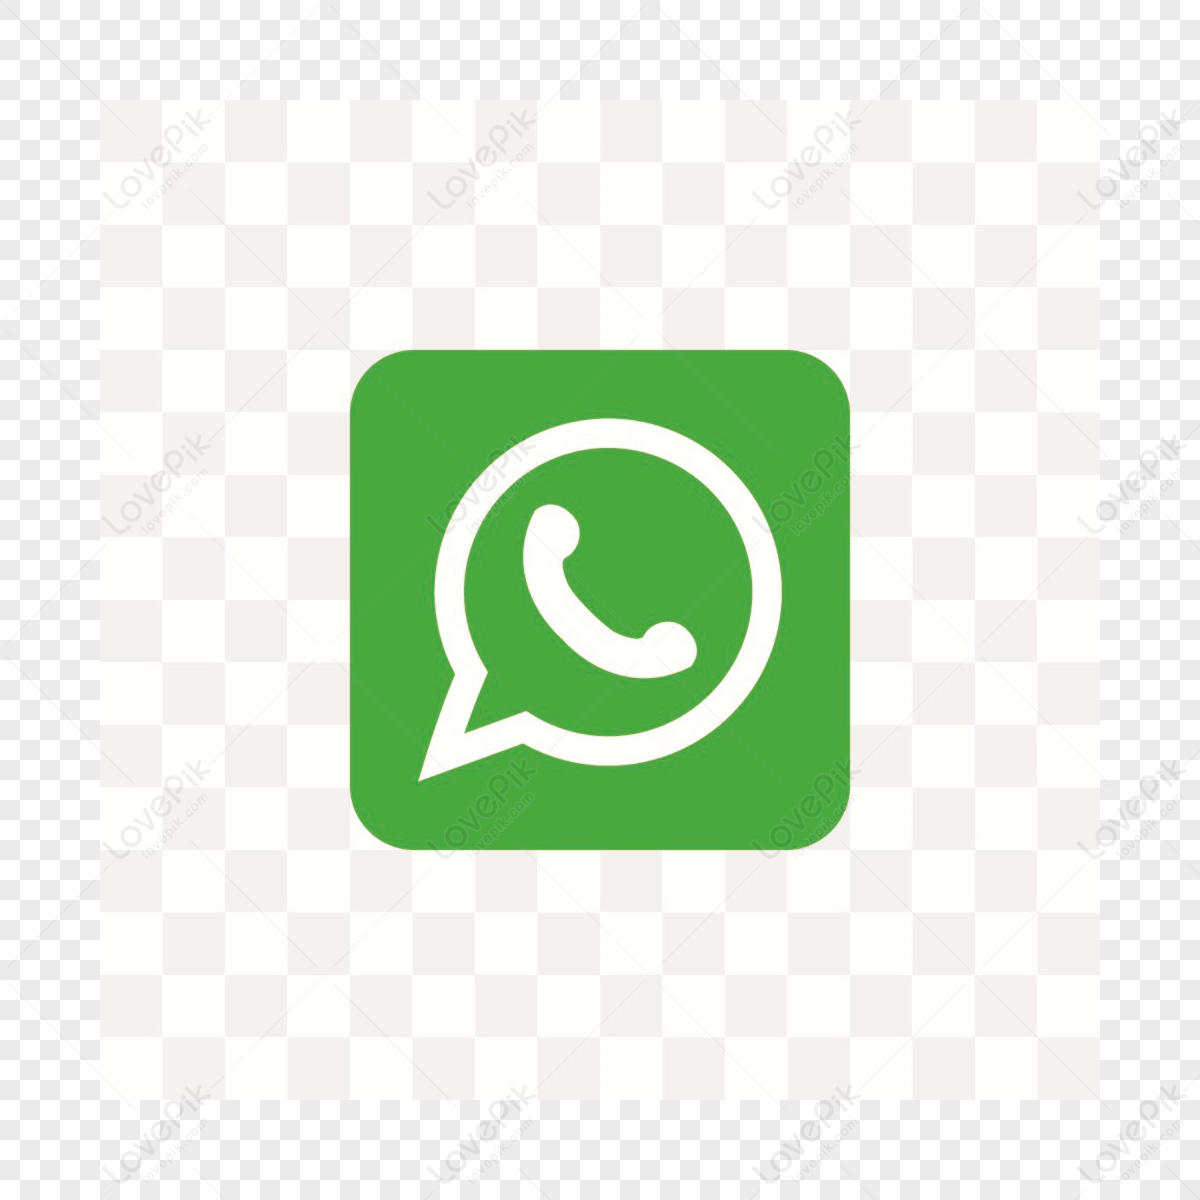 whatsapp icon logo,whatsapp icons,logo icons png image